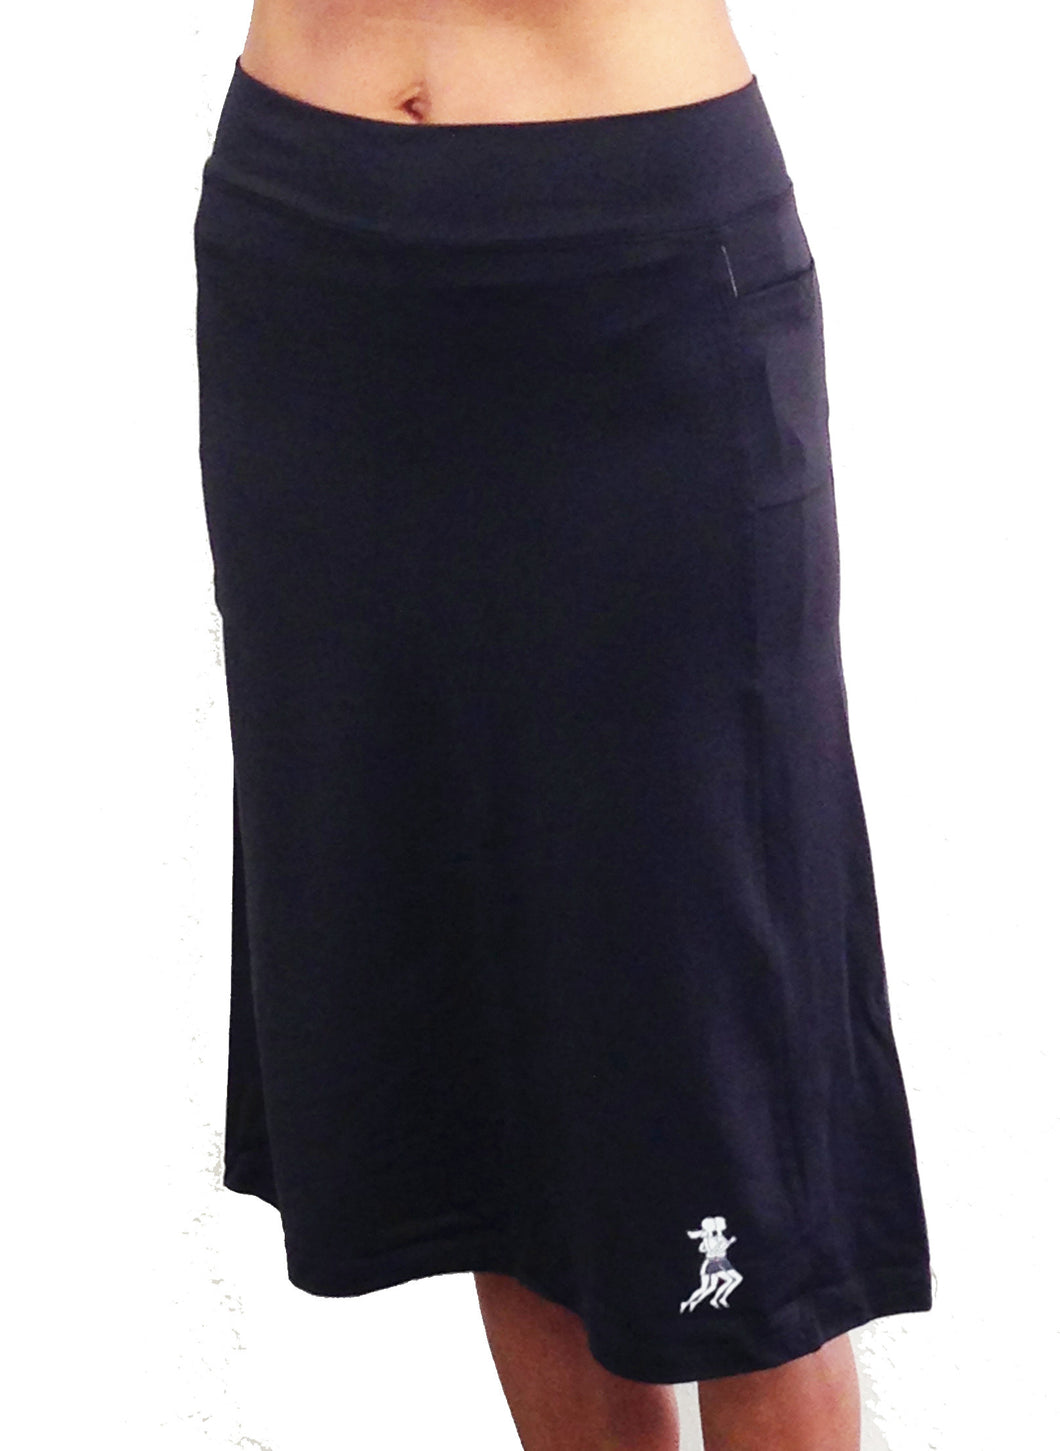 Black Spirit Athletic Skirt